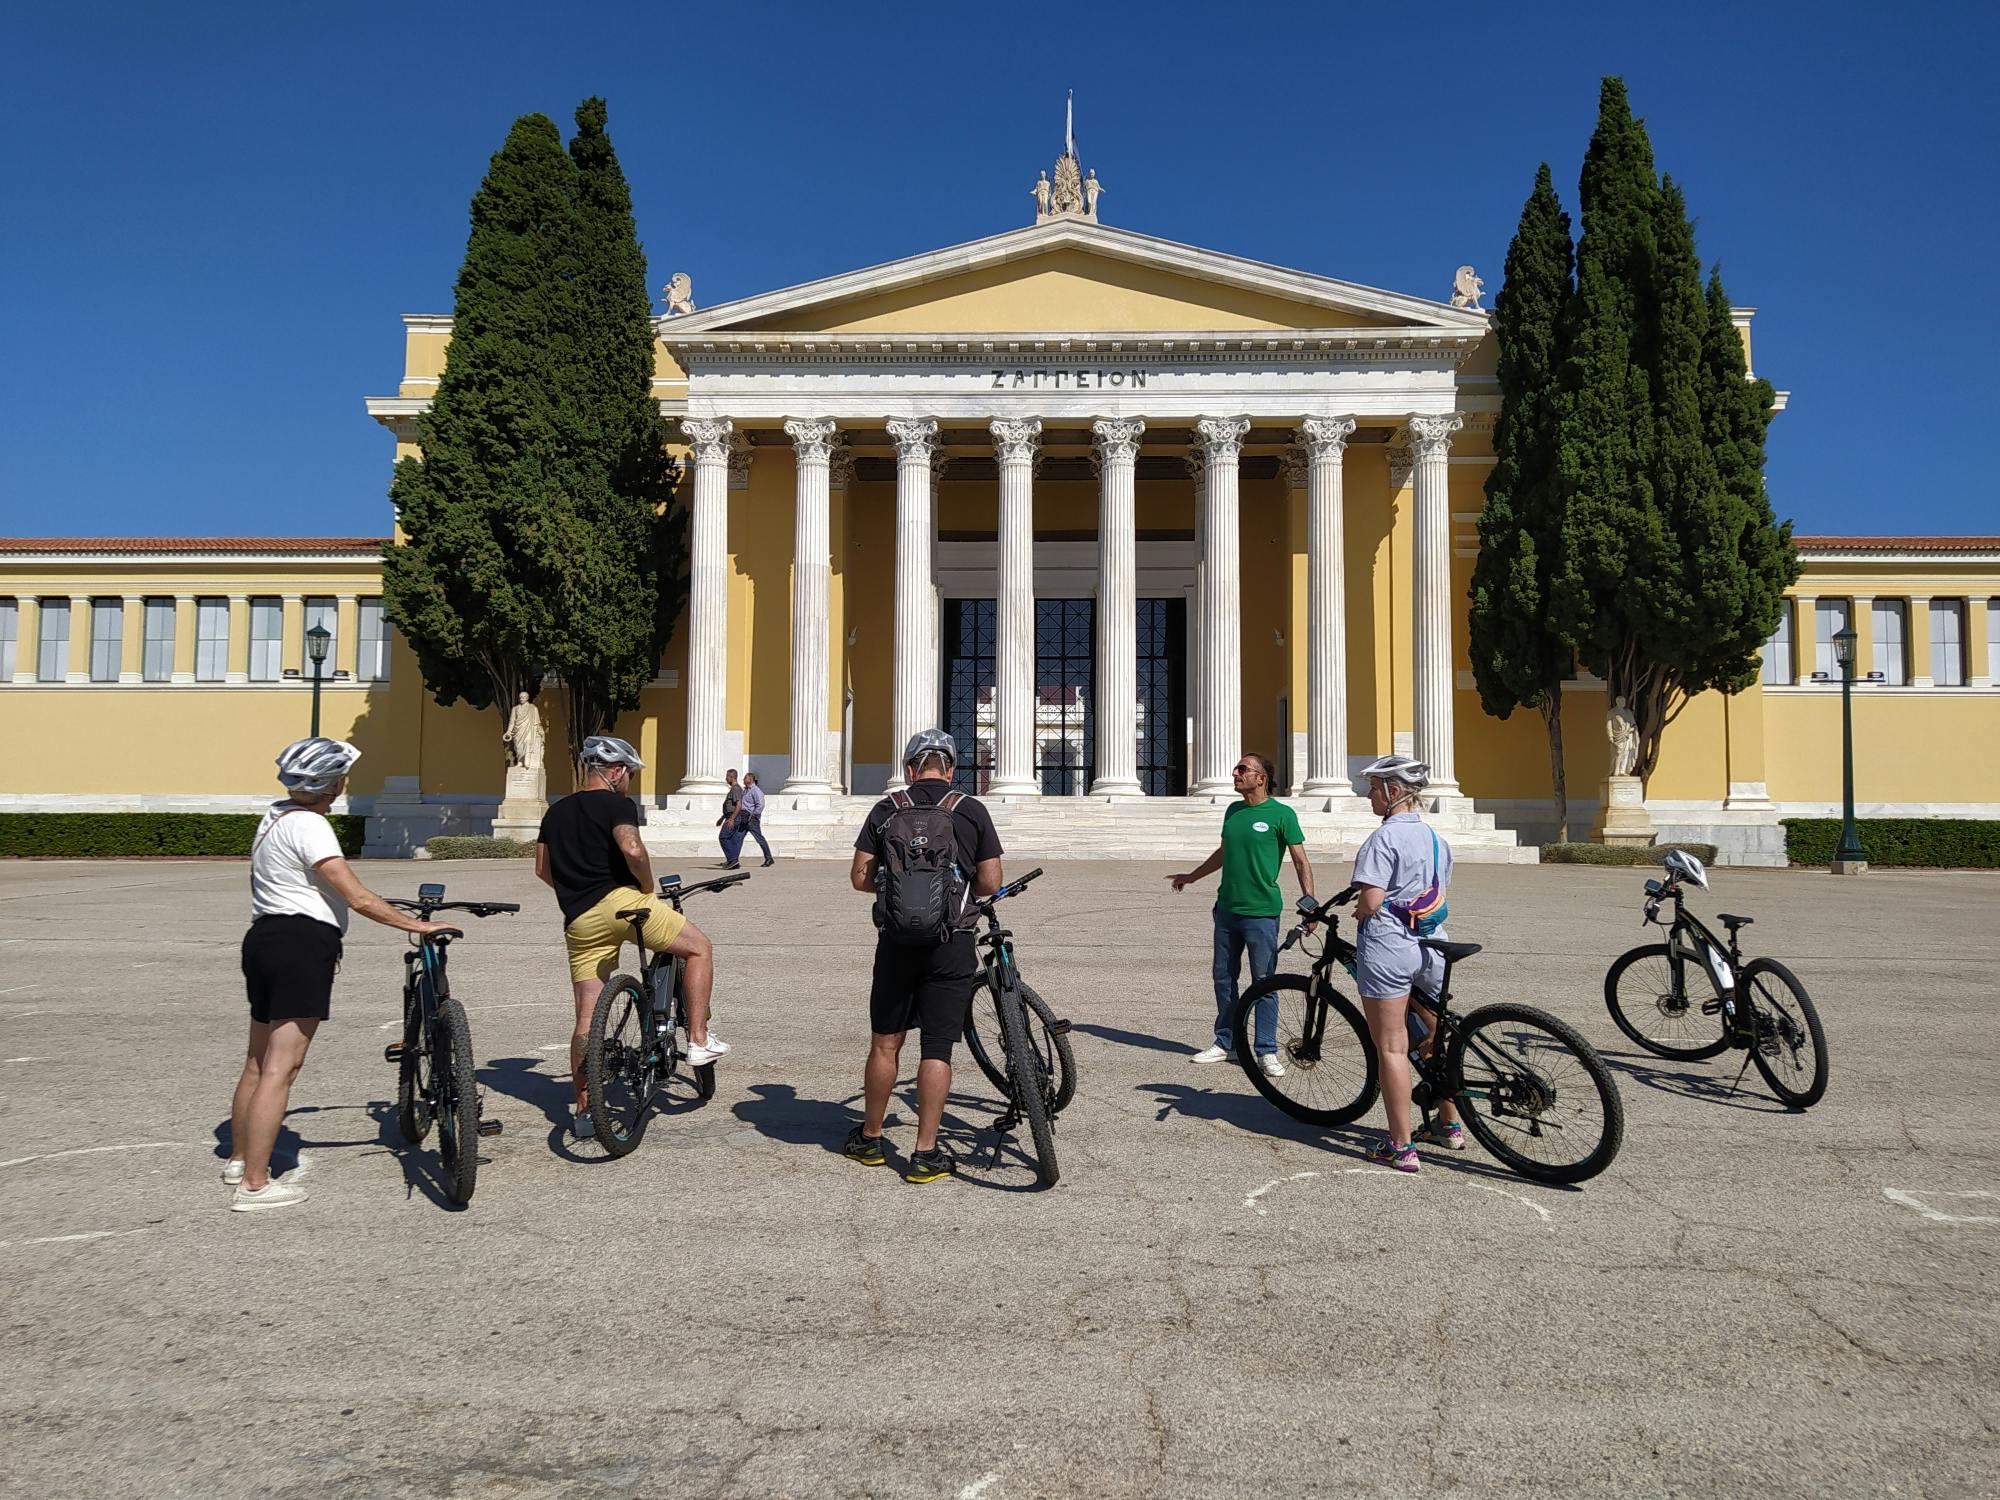 Malerische E-Bike-Tour durch Athen